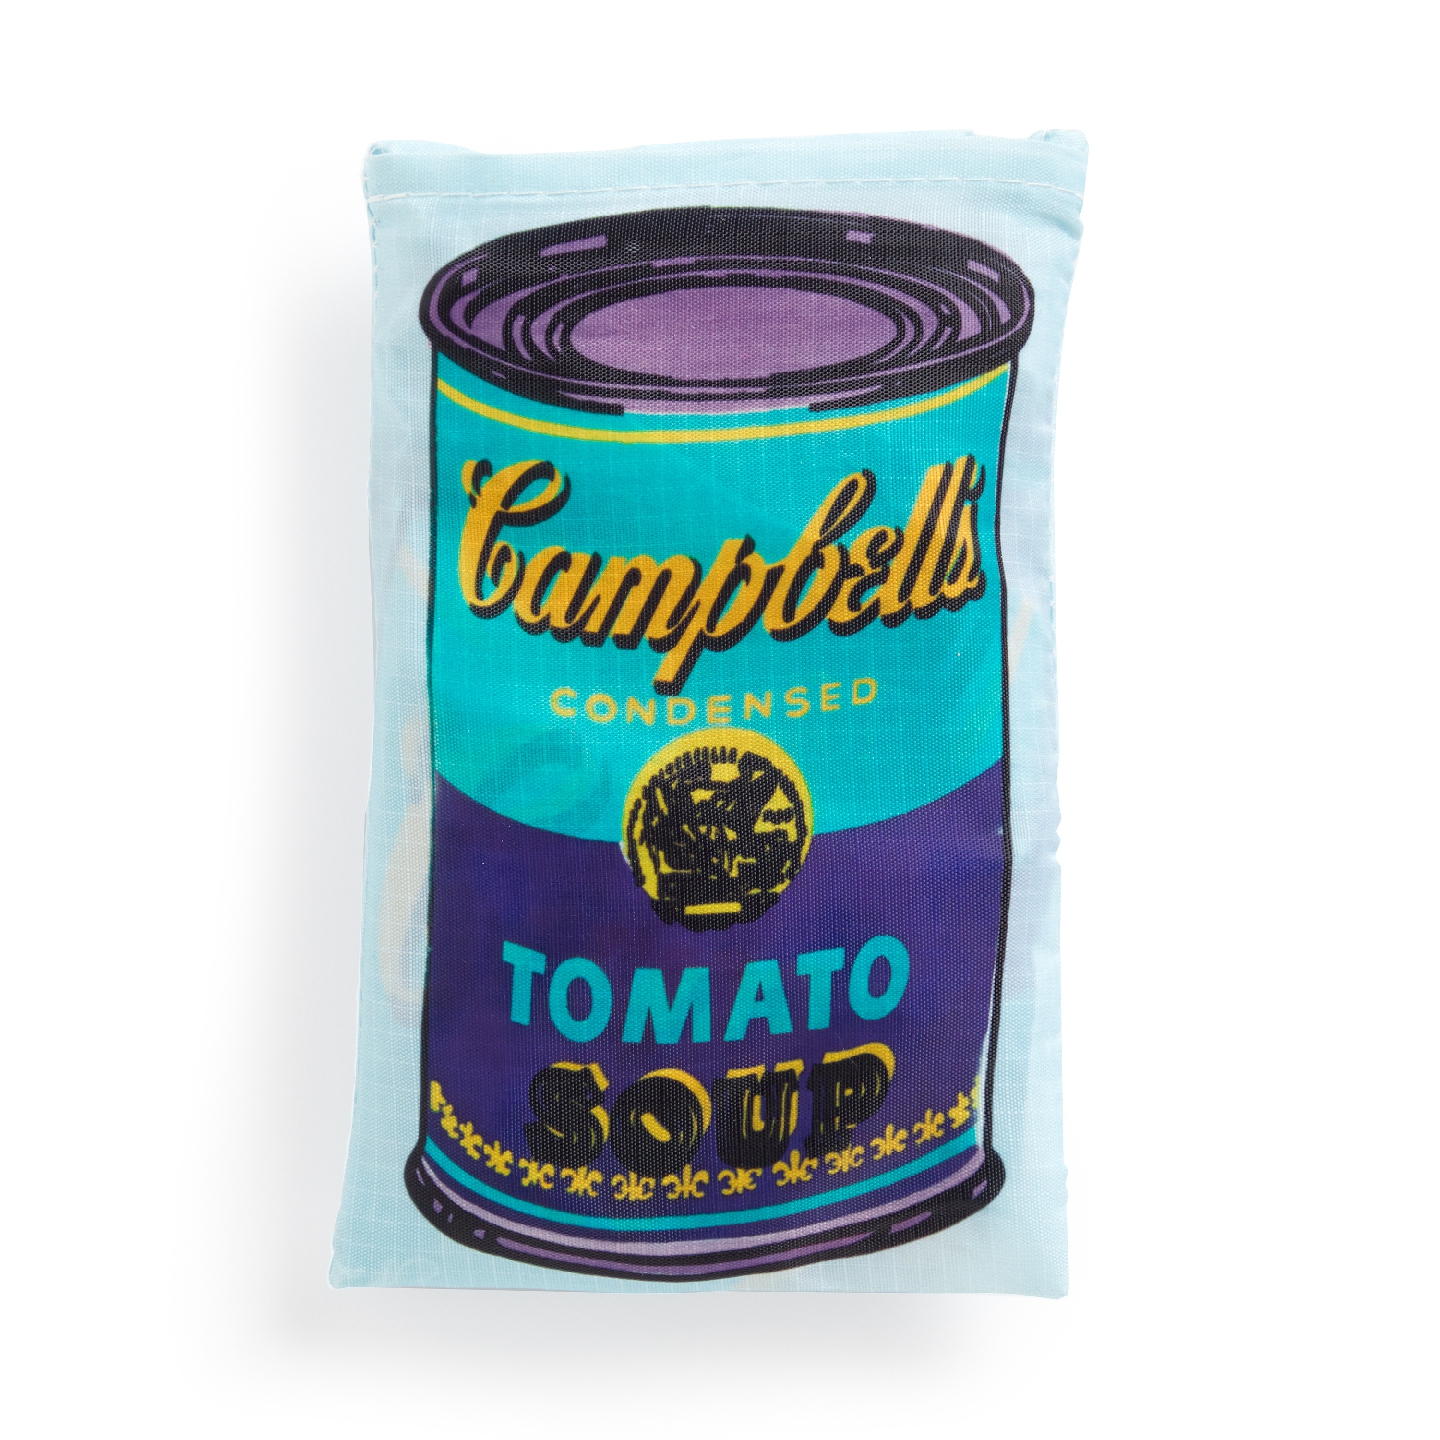 Andy Warhol Soup Can Reusable Bag